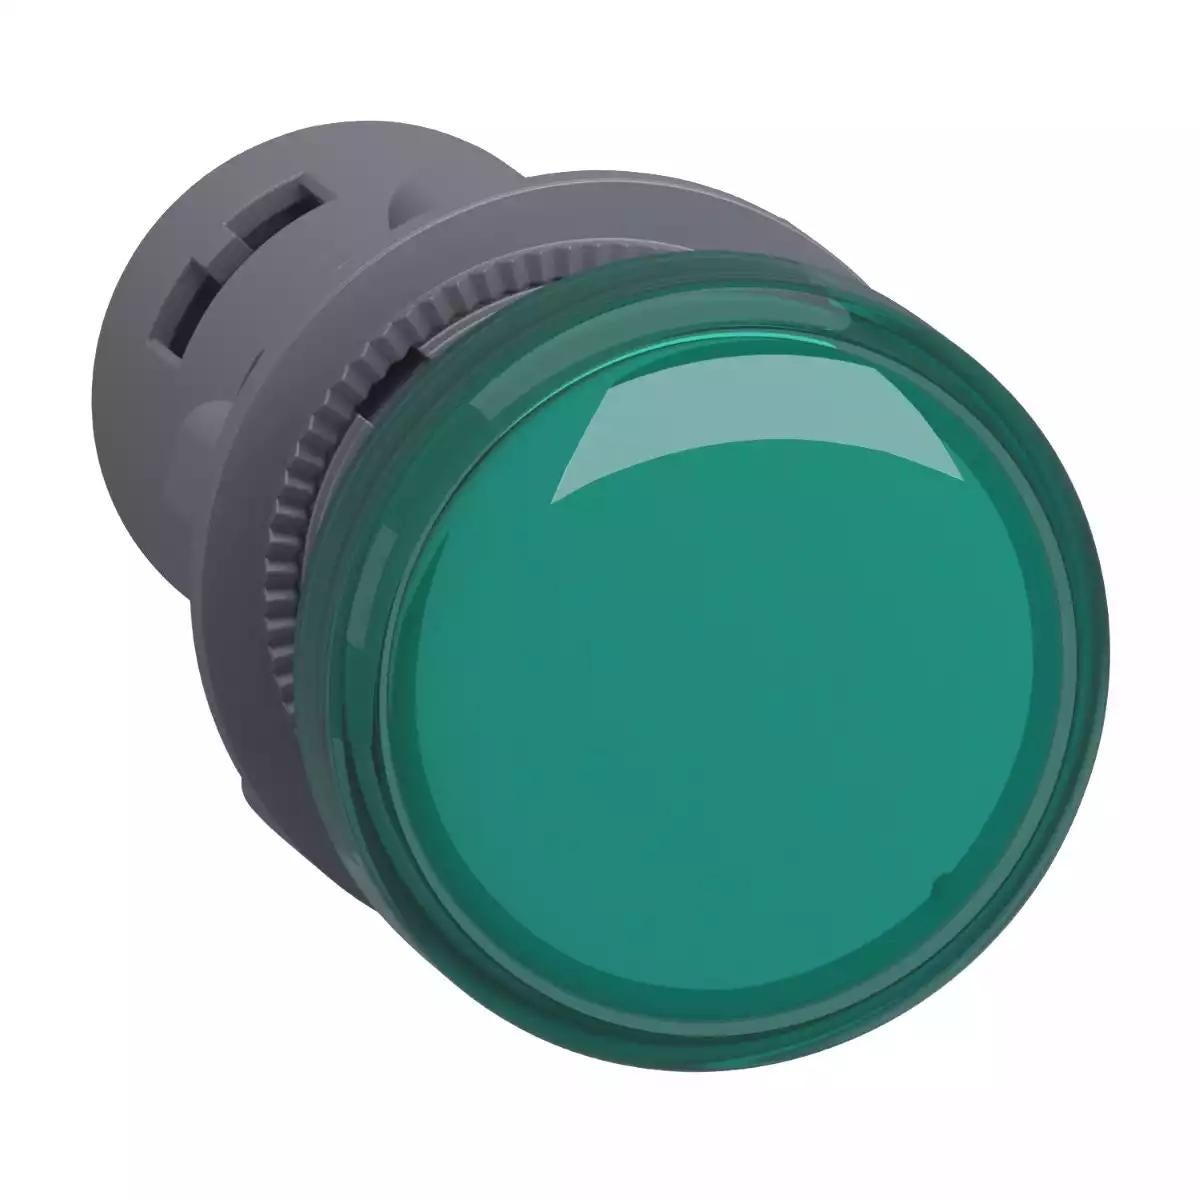 Schneider Electric round pilot light Ã˜ 22 - green - integral LED- 24 V AC/DC- screw clamp terminals